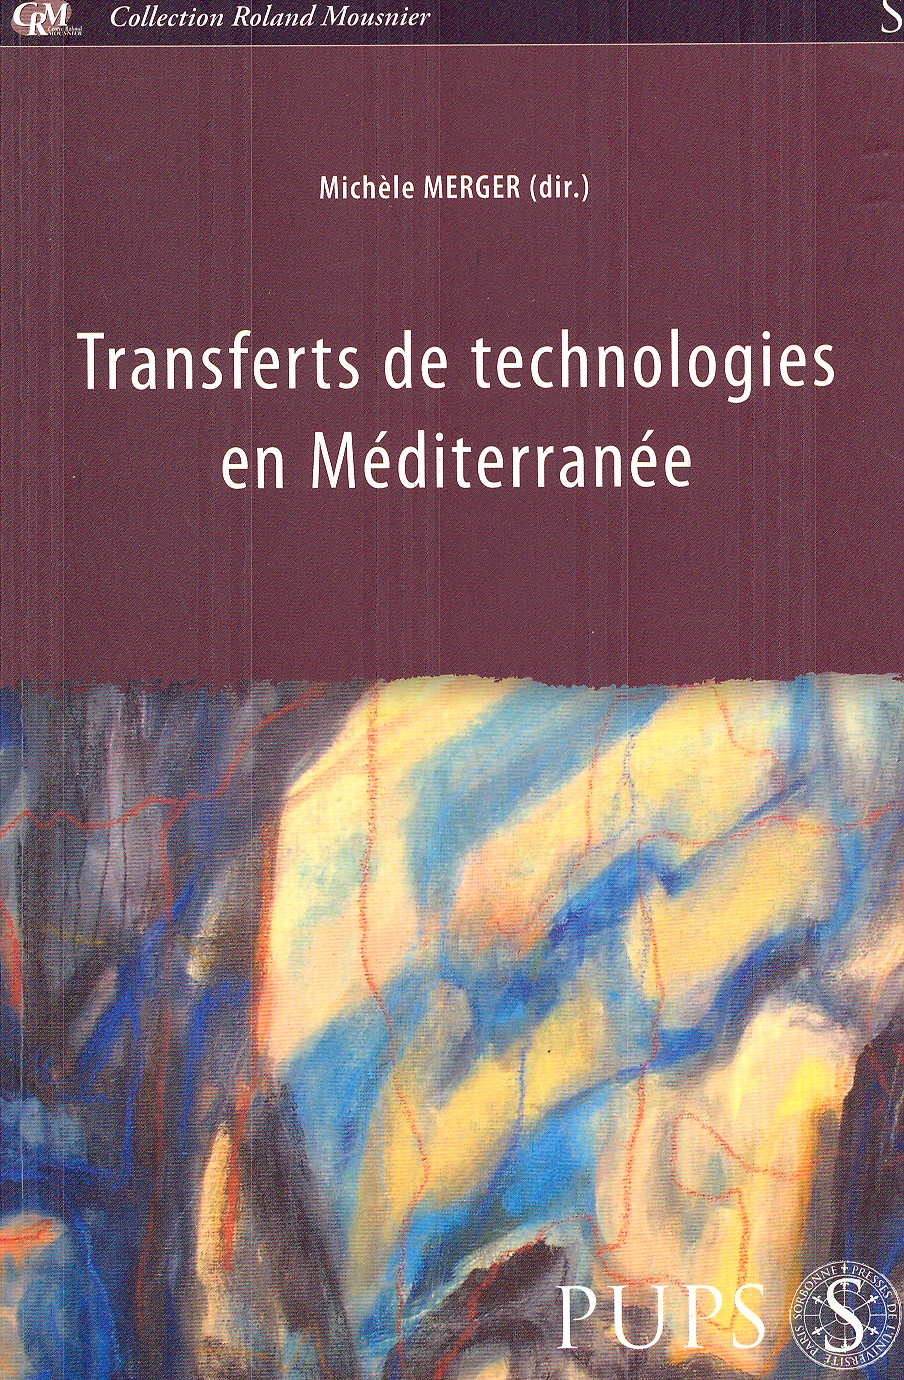 Imagen de portada del libro Transferts de technologies en Méditerranée